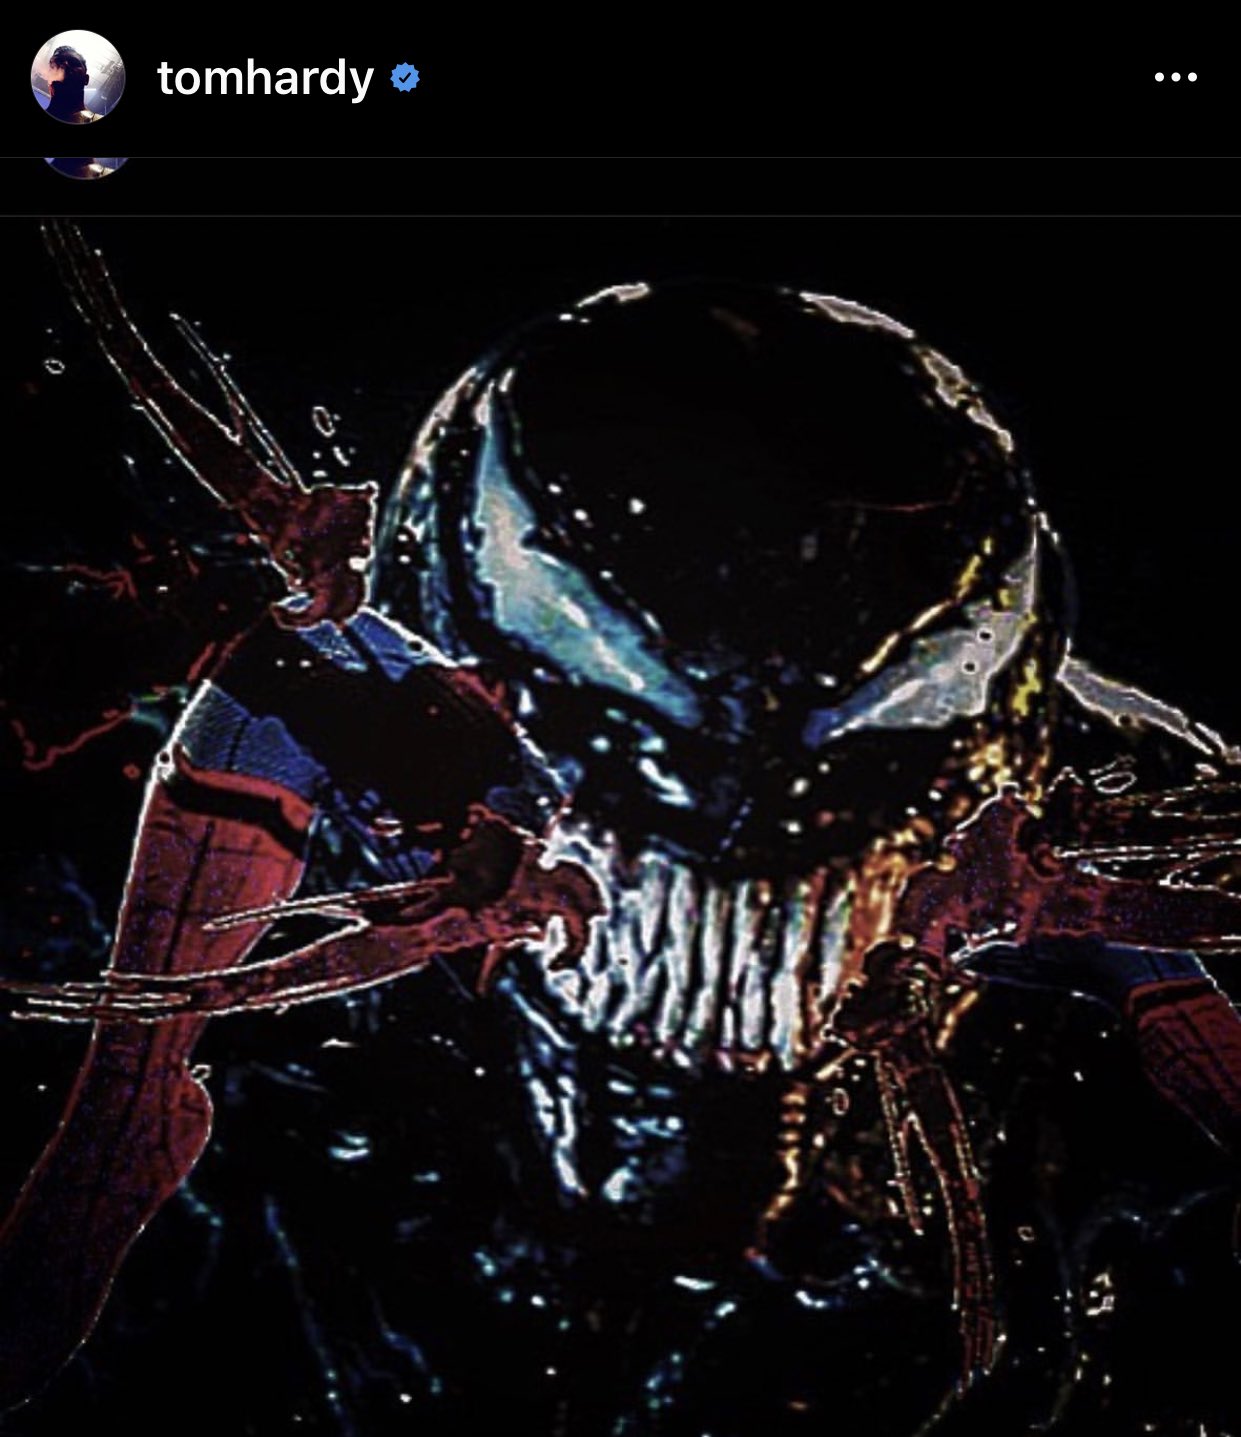 Hình nền Venom 2018 đẹp chất lượng cao, Hình nền máy tính venom đẹp